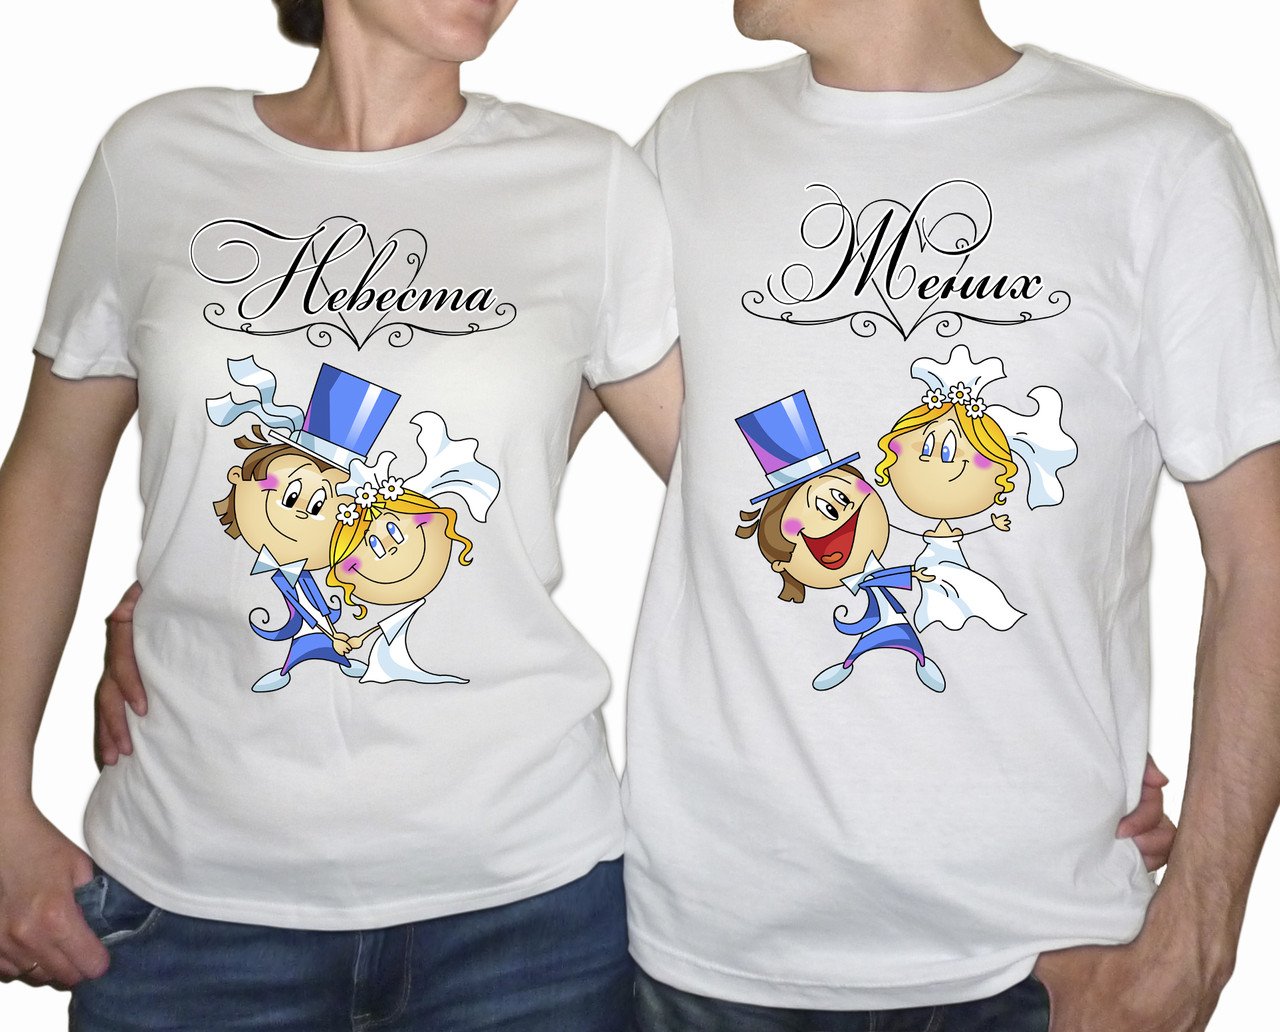 Жених и невеста в футболках